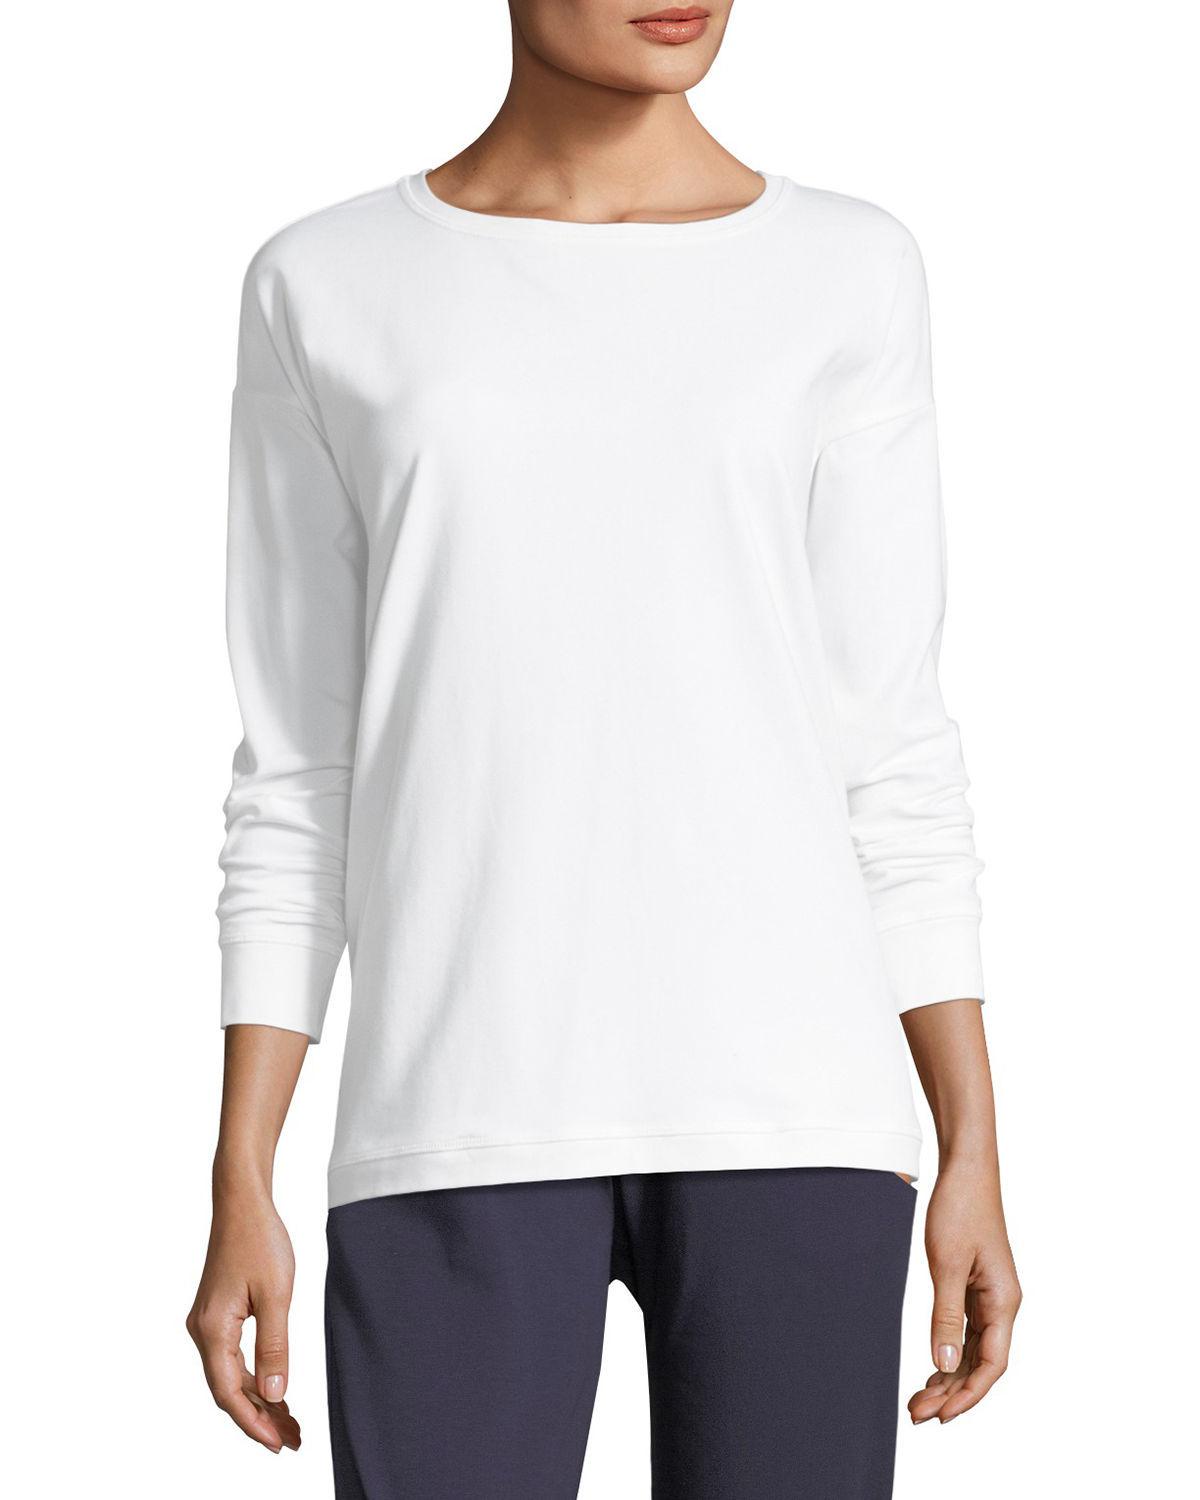 Eileen Fisher Cotton Stretch Jersey Sweatshirt Top in White - Lyst